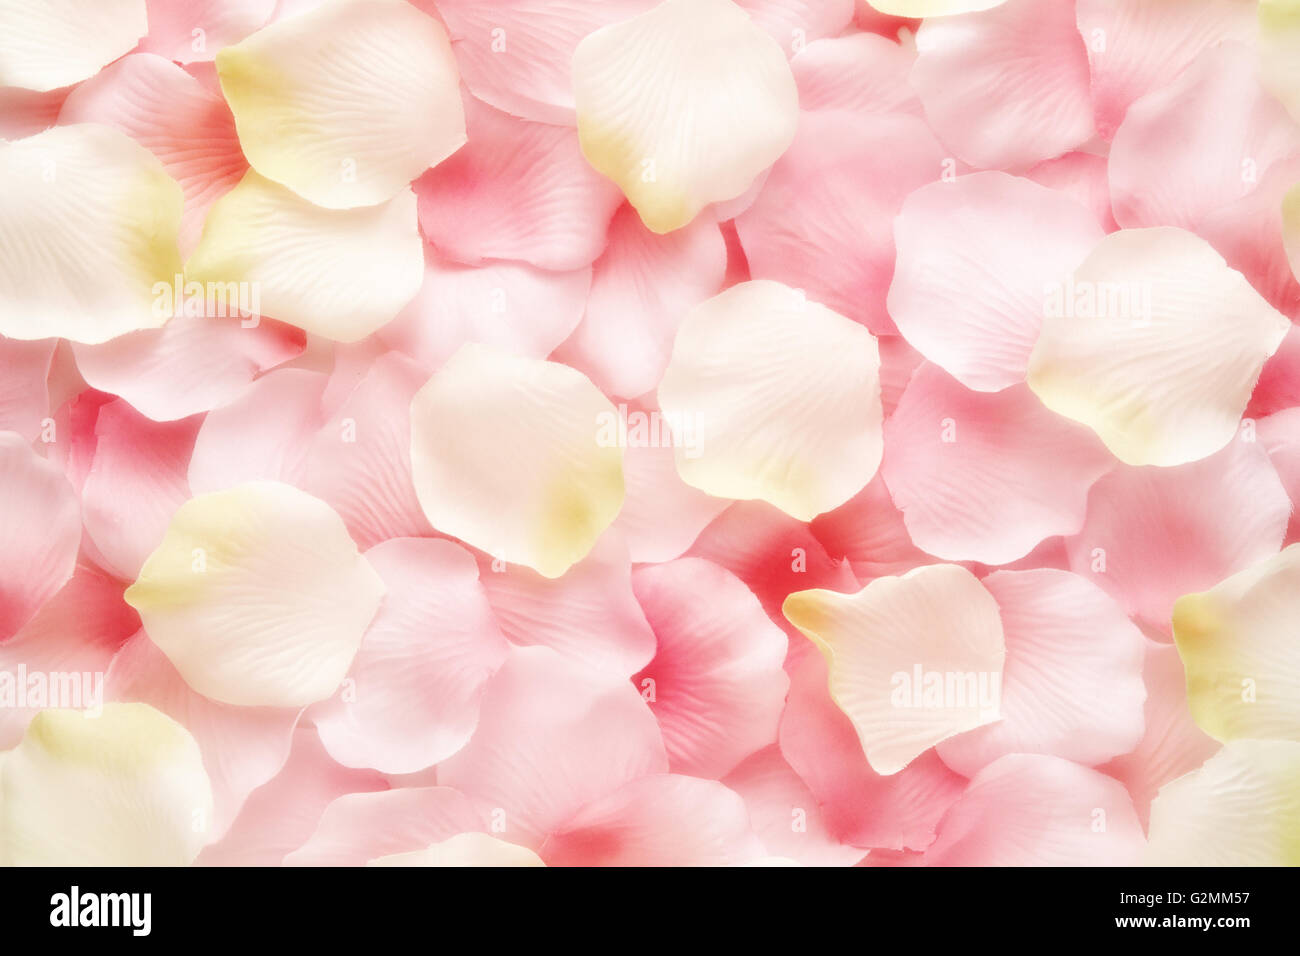 La texture de fond rose et blanc doux pétales de rose dans un mix aléatoire Banque D'Images